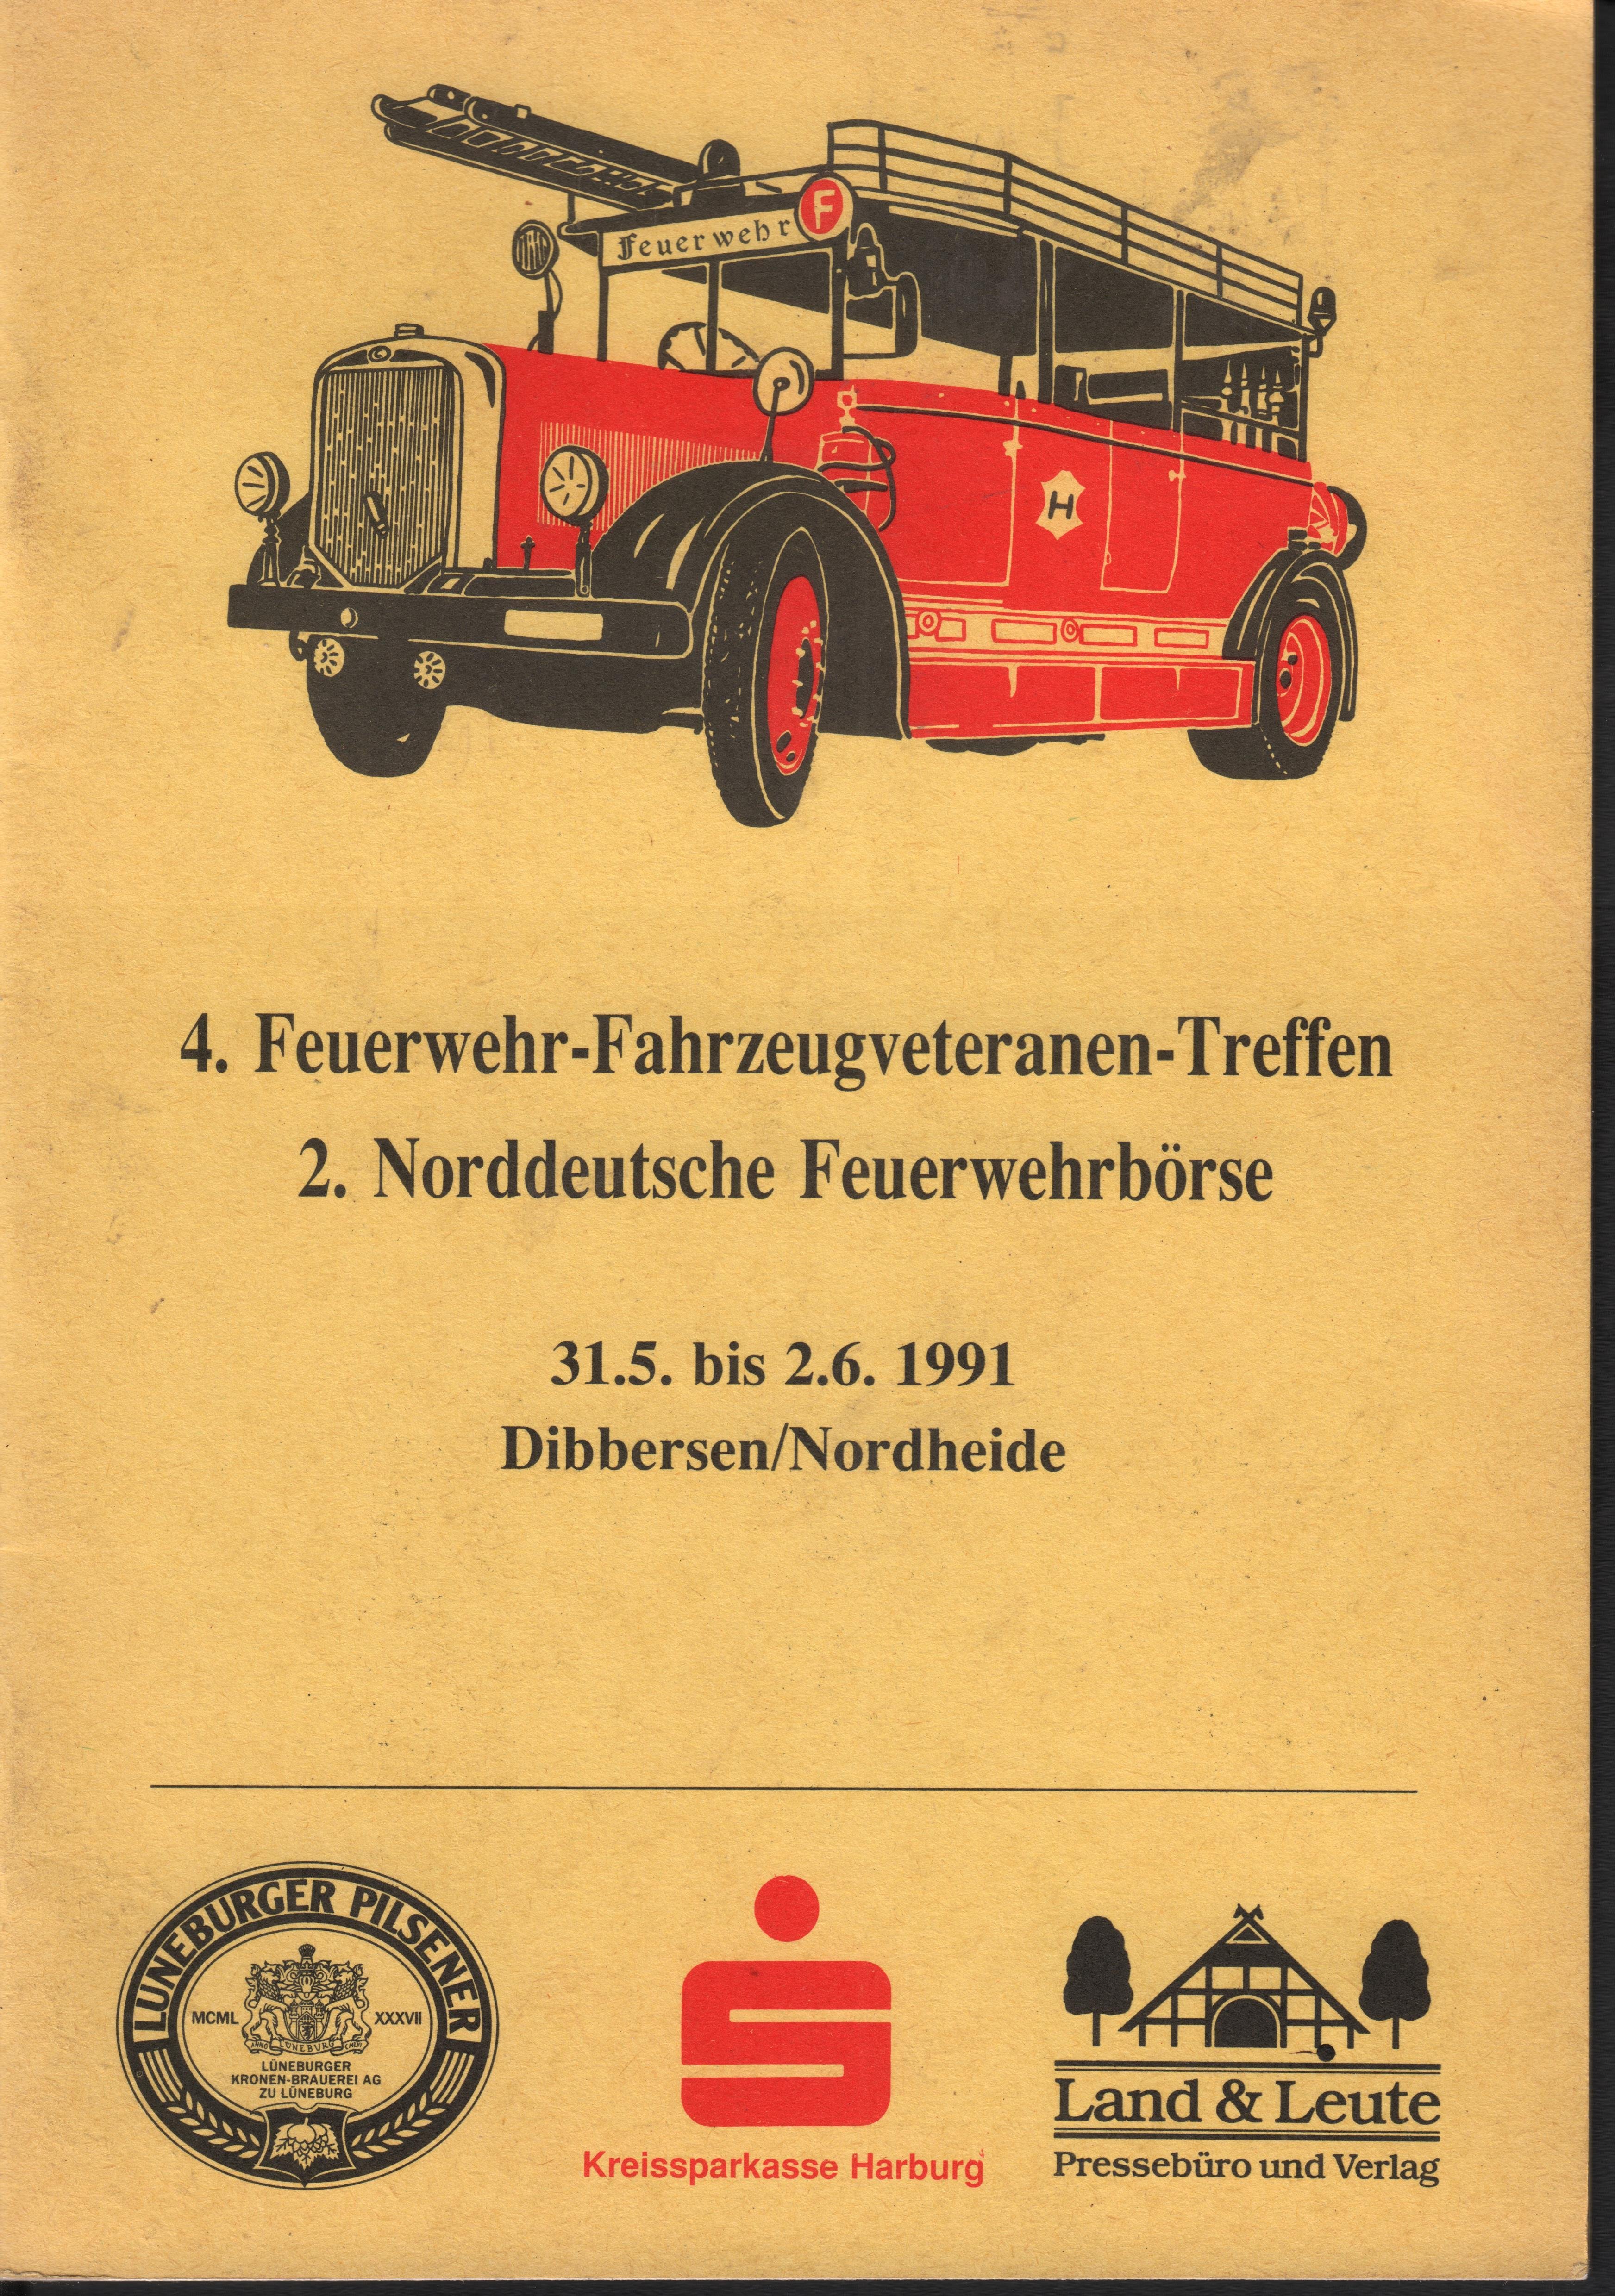 4. Feuerwehr-Fahrzeugveteranen-Treffen (Feuerwehrmuseum Grethen CC BY-NC-SA)